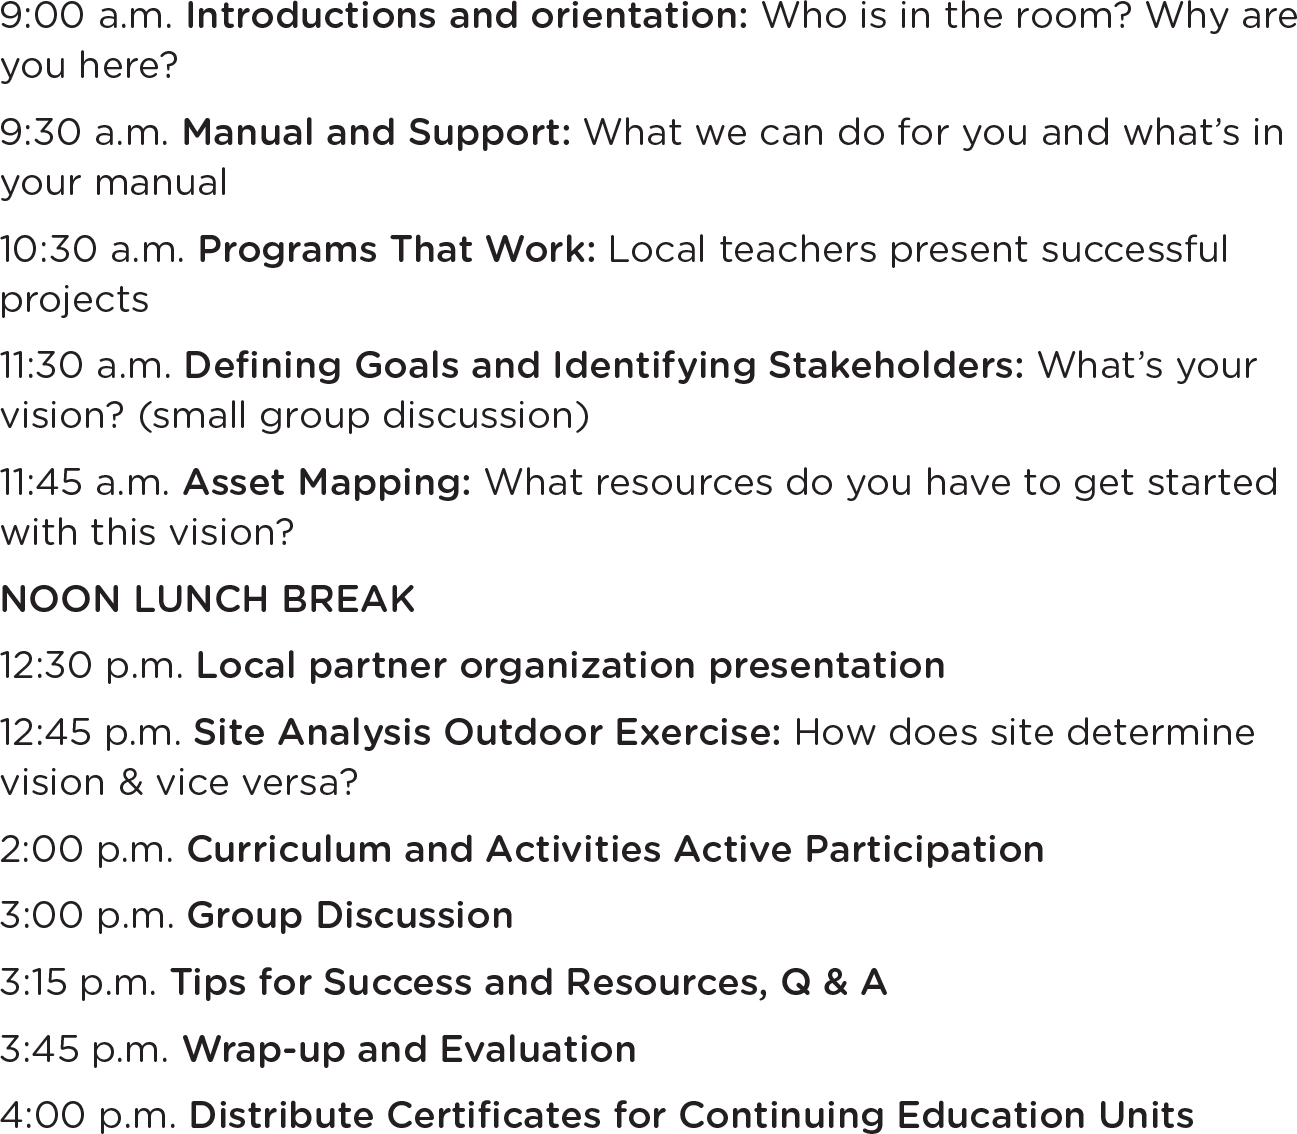 Sample agenda for formal seven-hour workshop.